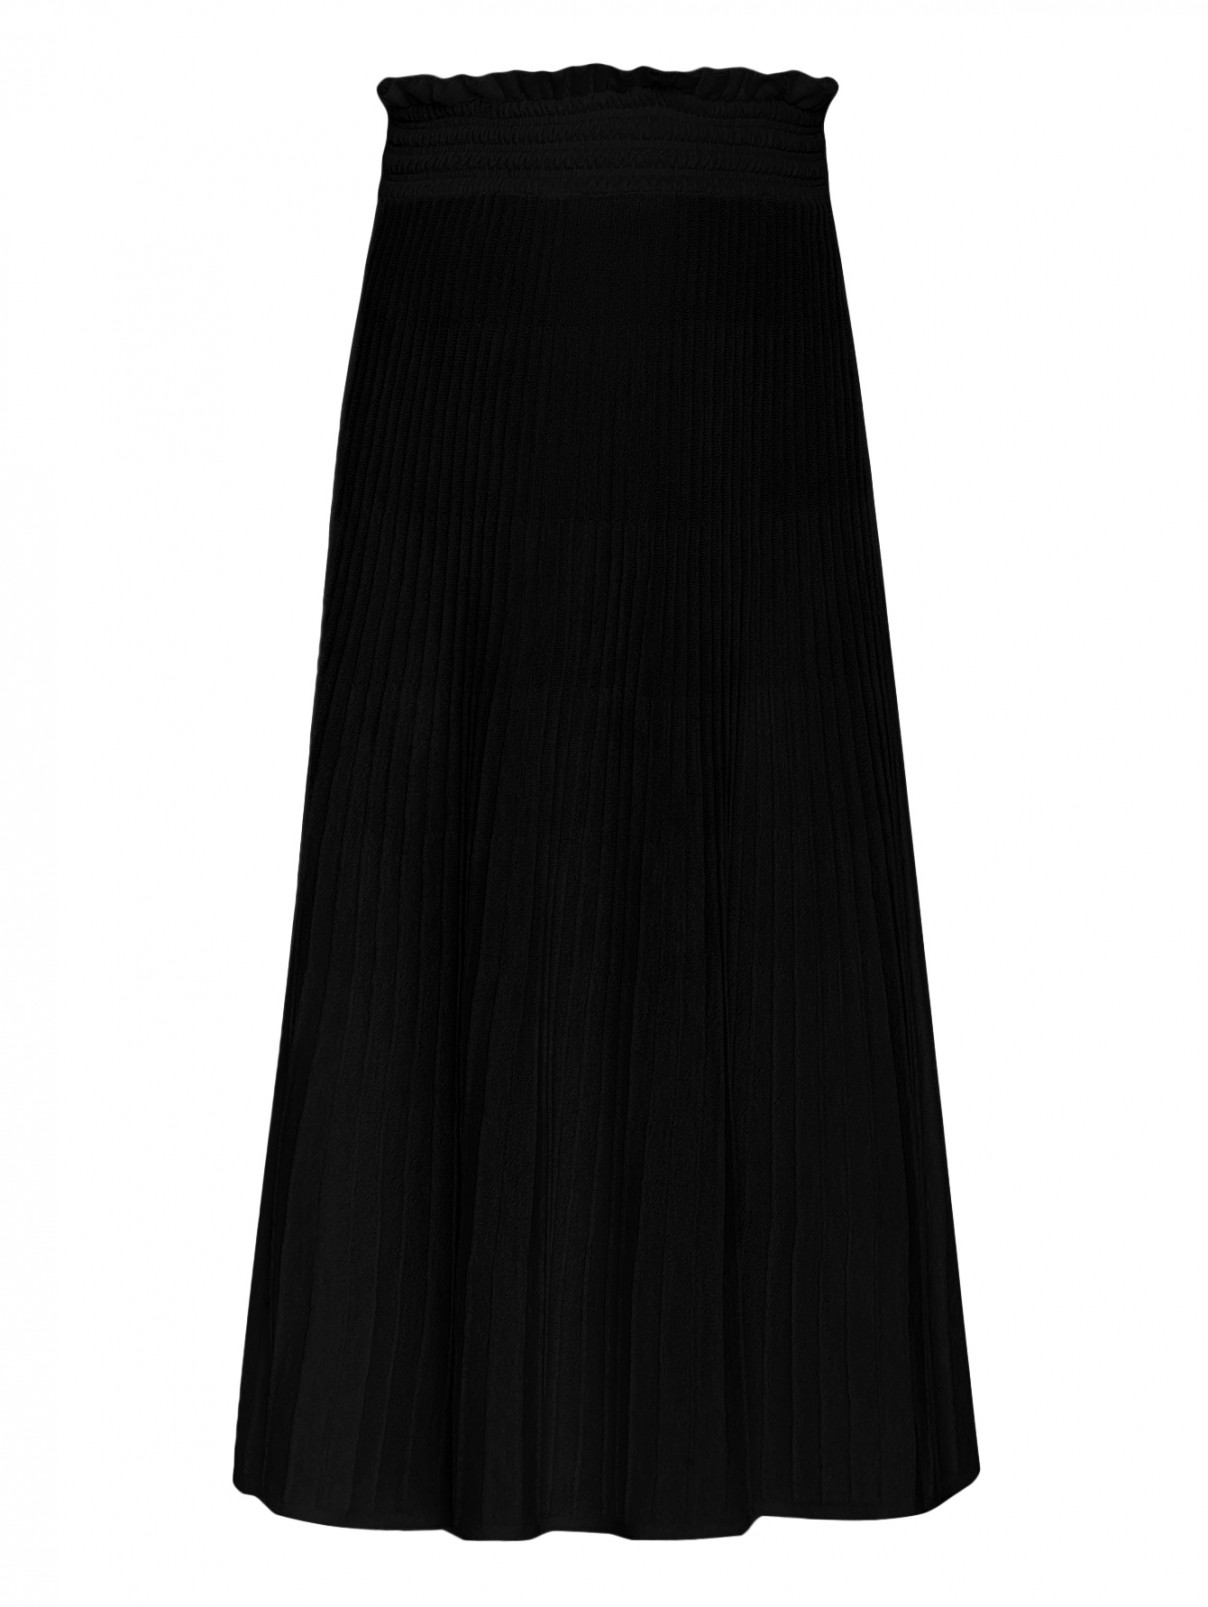 Юбка-миди из шерсти на резинке Moschino Boutique  –  Общий вид  – Цвет:  Черный